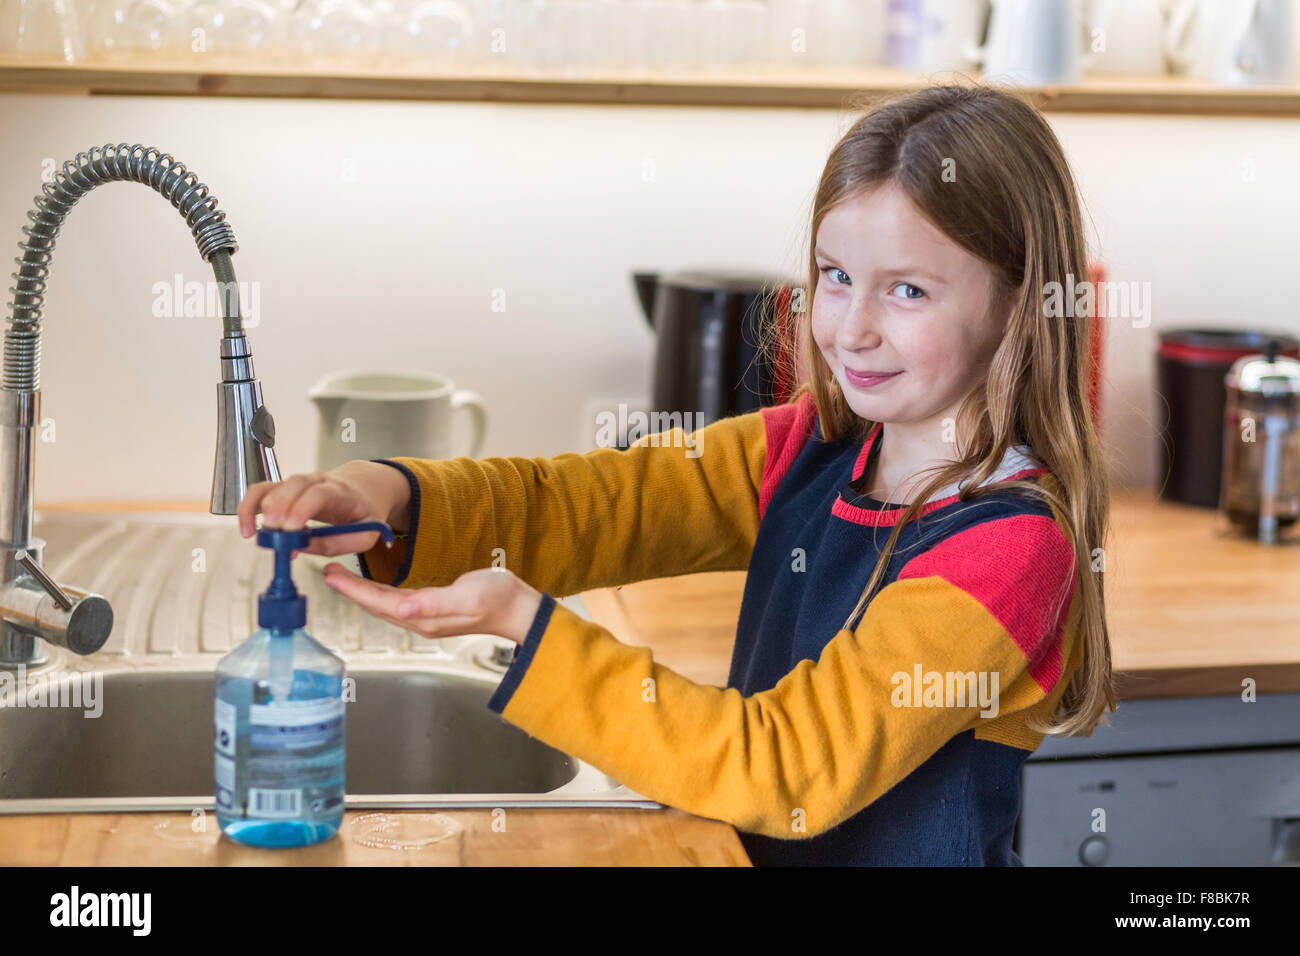 9-años de edad, es lavarse las manos con Gel Hidroalcoholico. Foto de stock